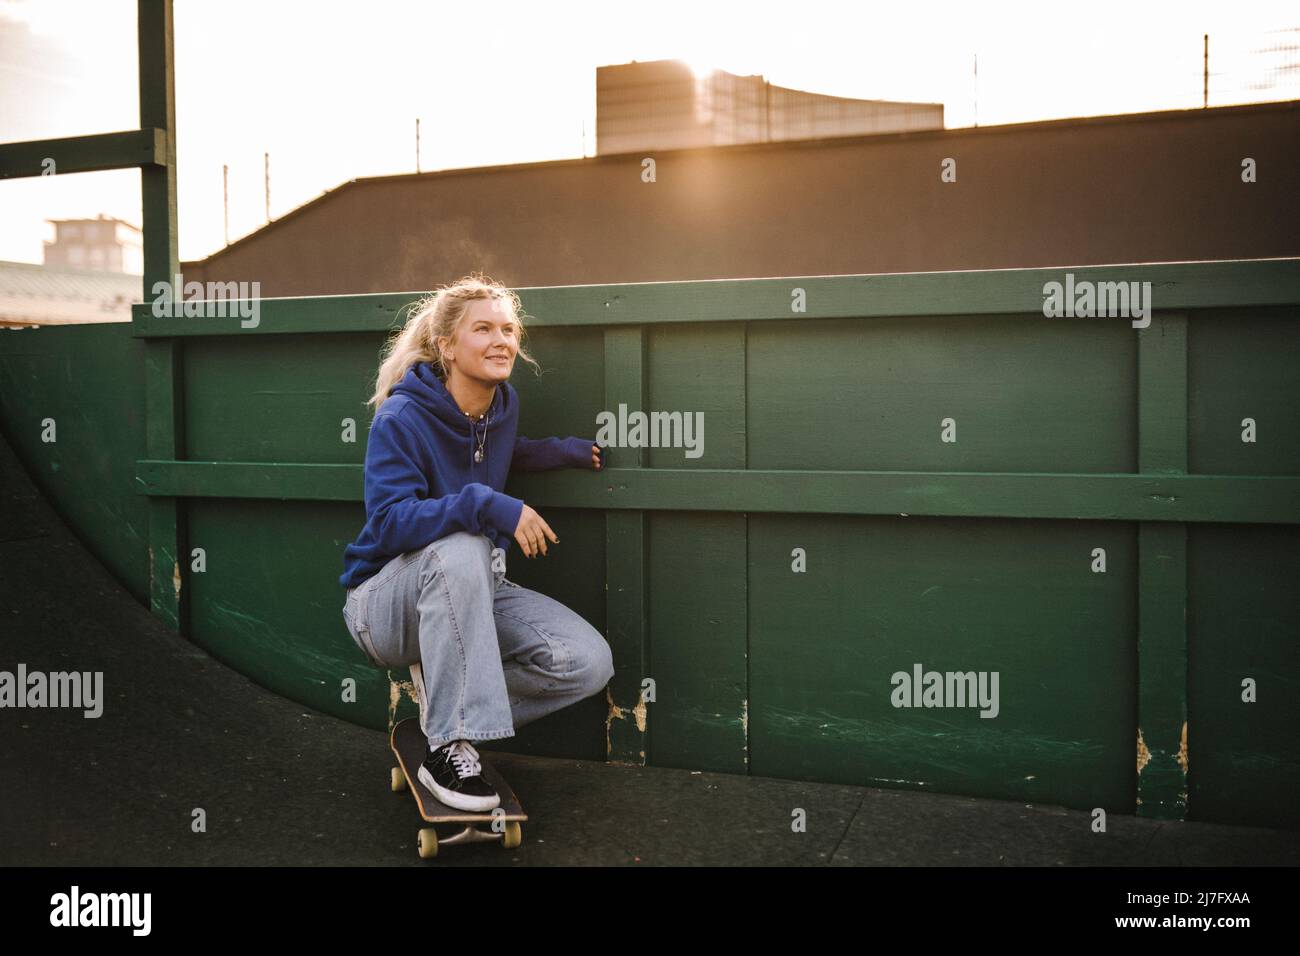 Lächelndes Teenager-Mädchen, das auf dem Skateboard hockend ist Stockfoto